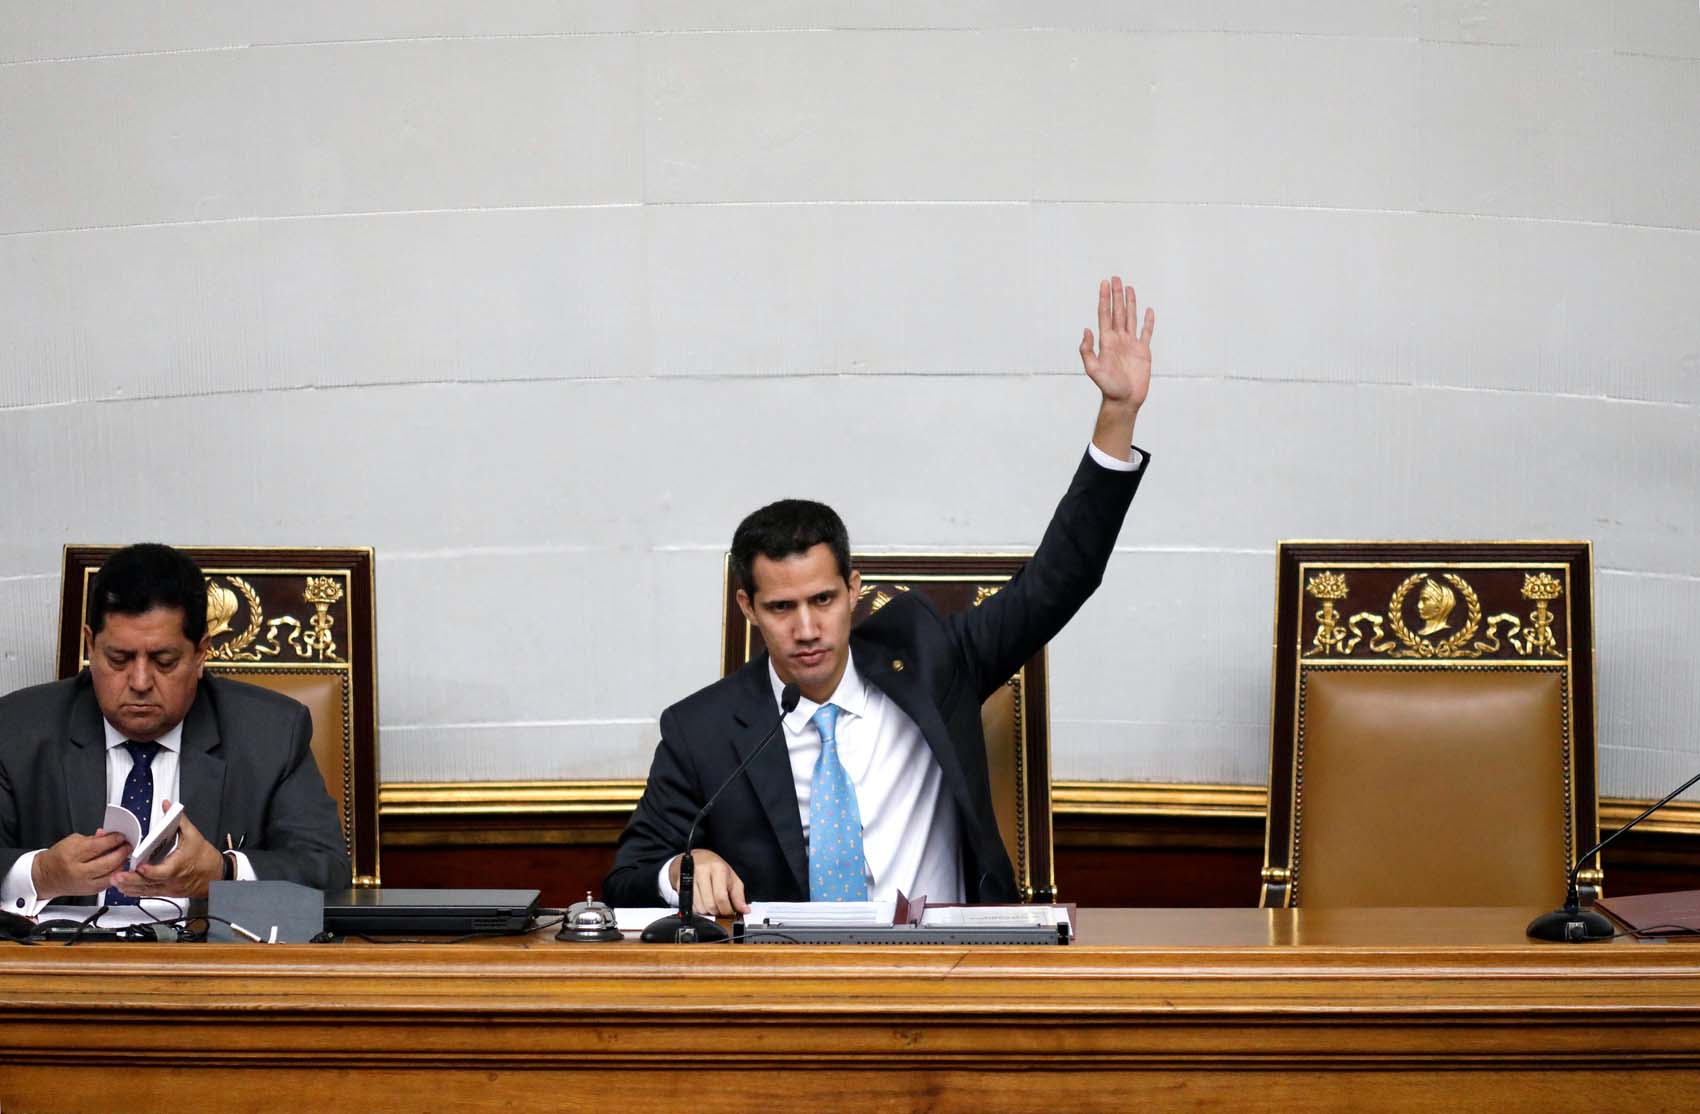 La Asamblea Nacional considera pedir a varios países que congelen cuentas del régimen de Maduro